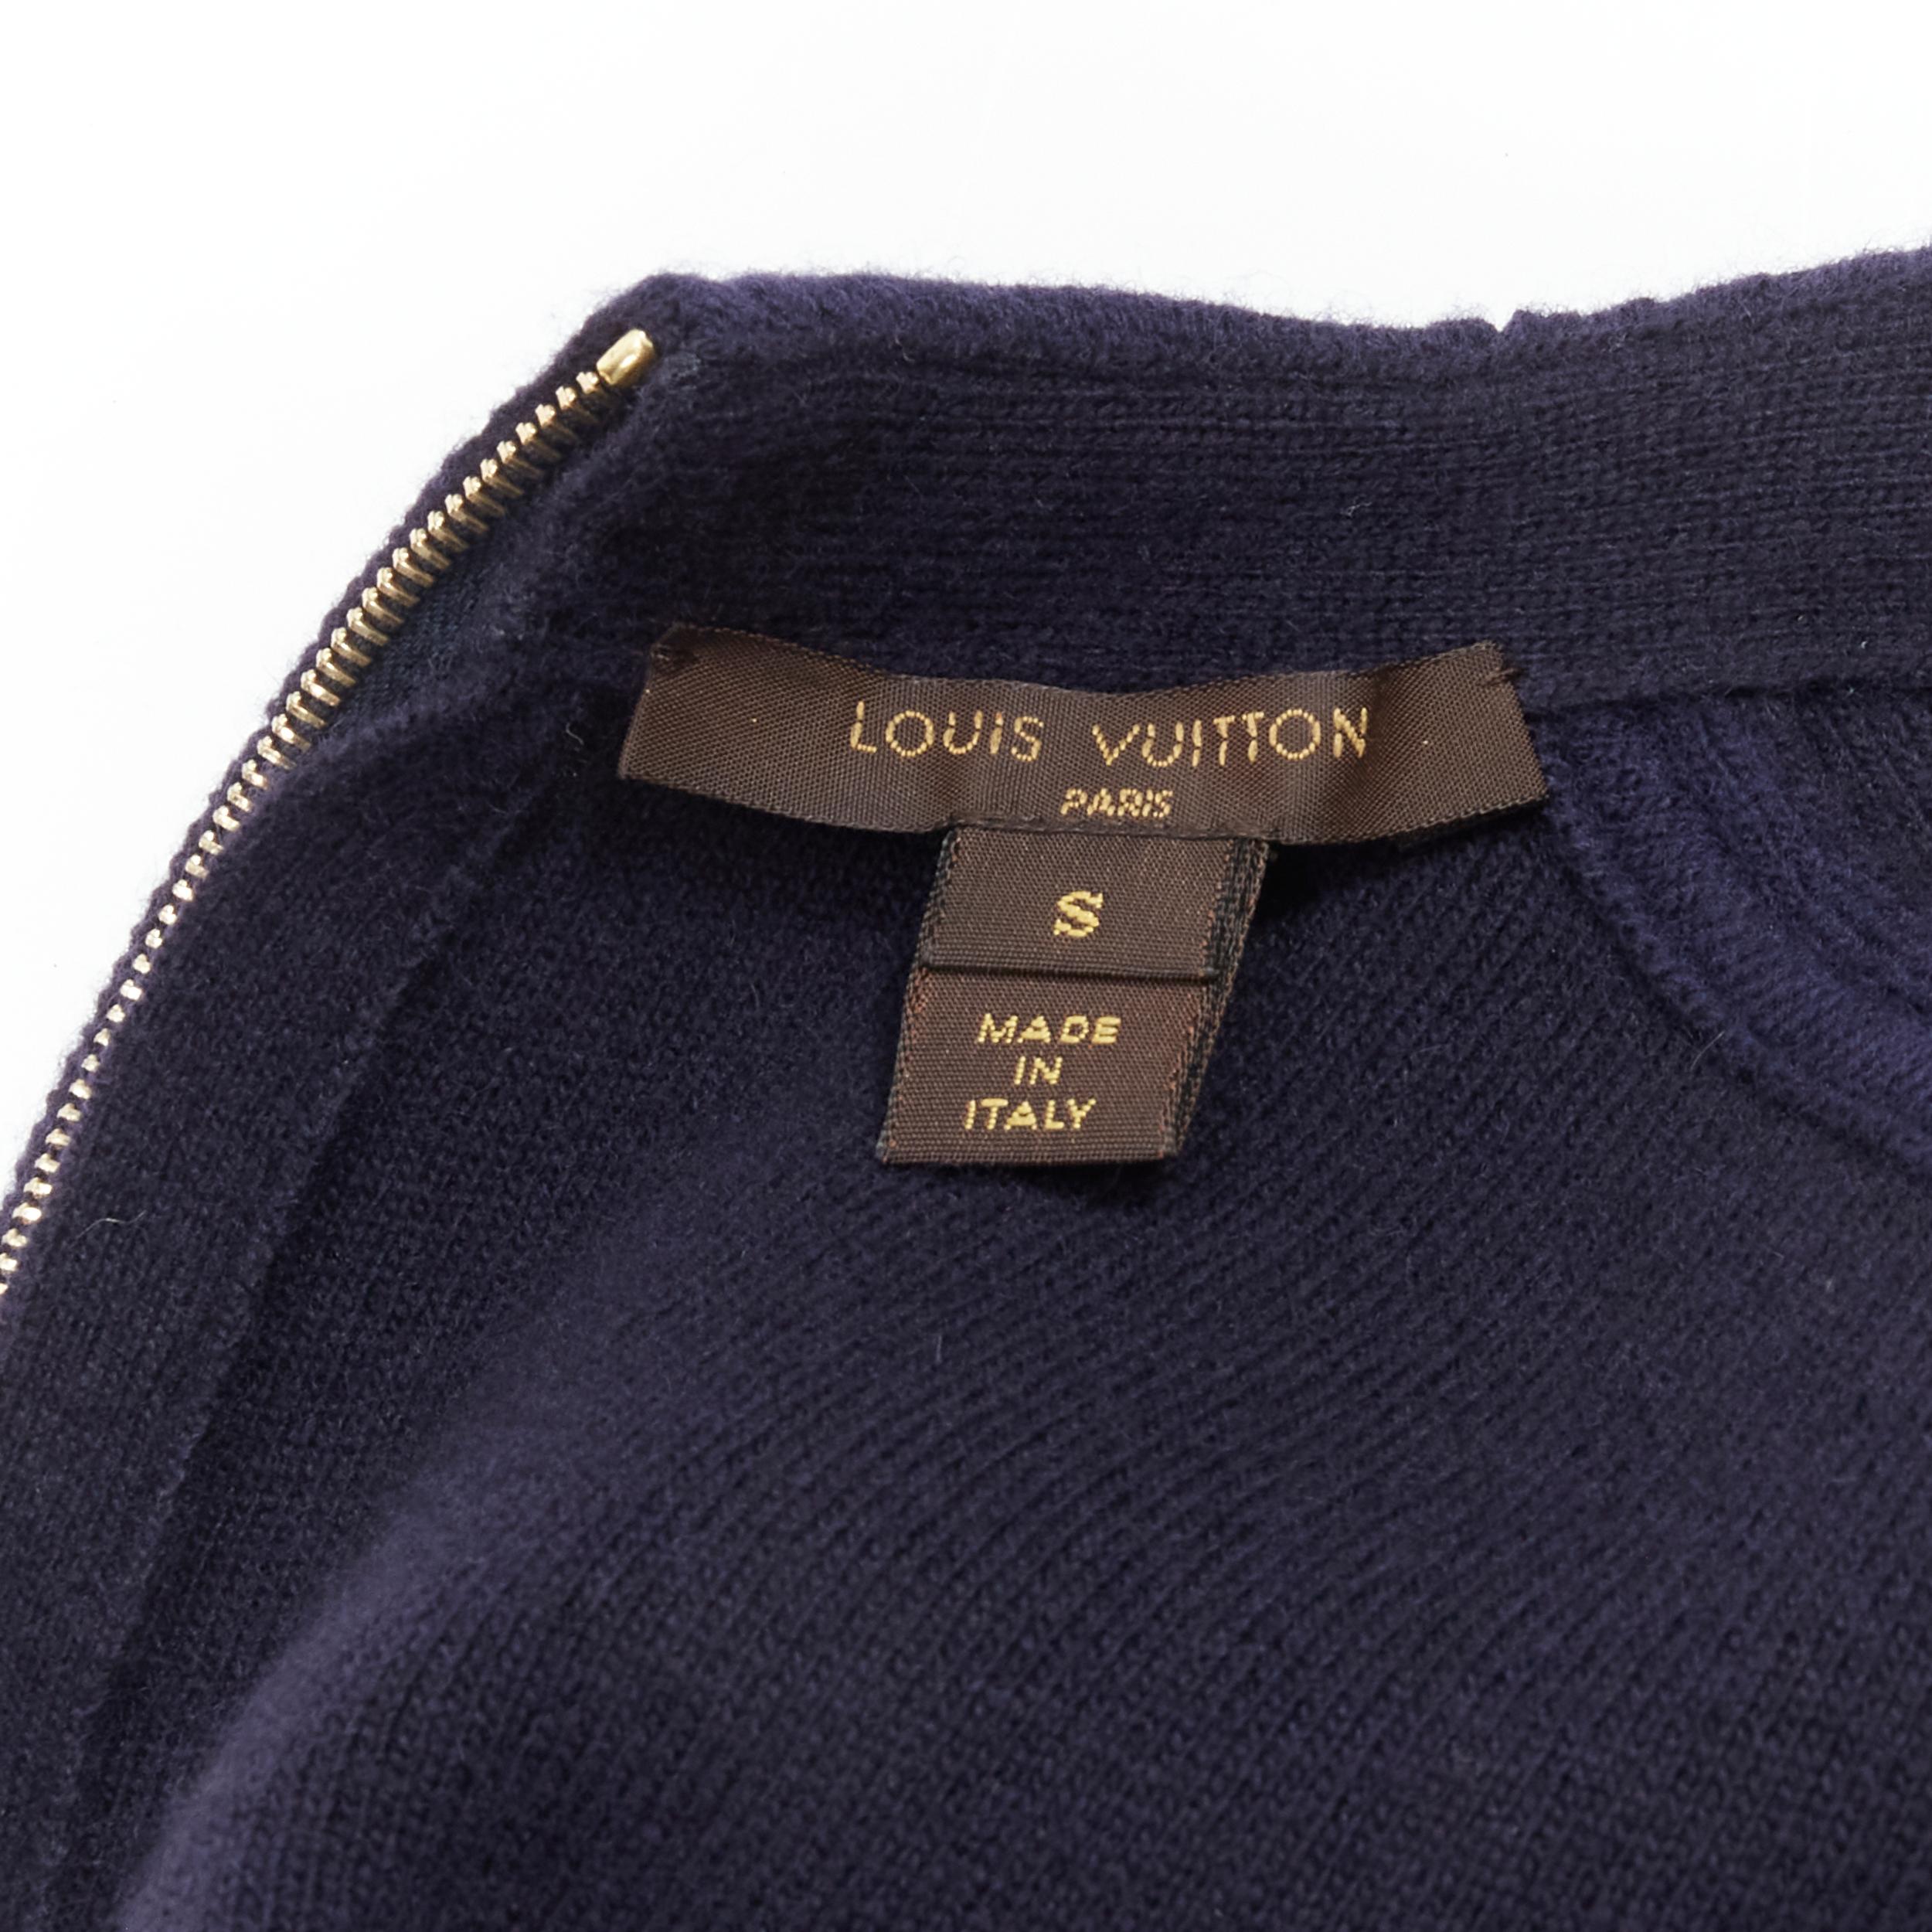 LOUIS VUITTON navy blue wool knit decorative button romper playsuit S 5